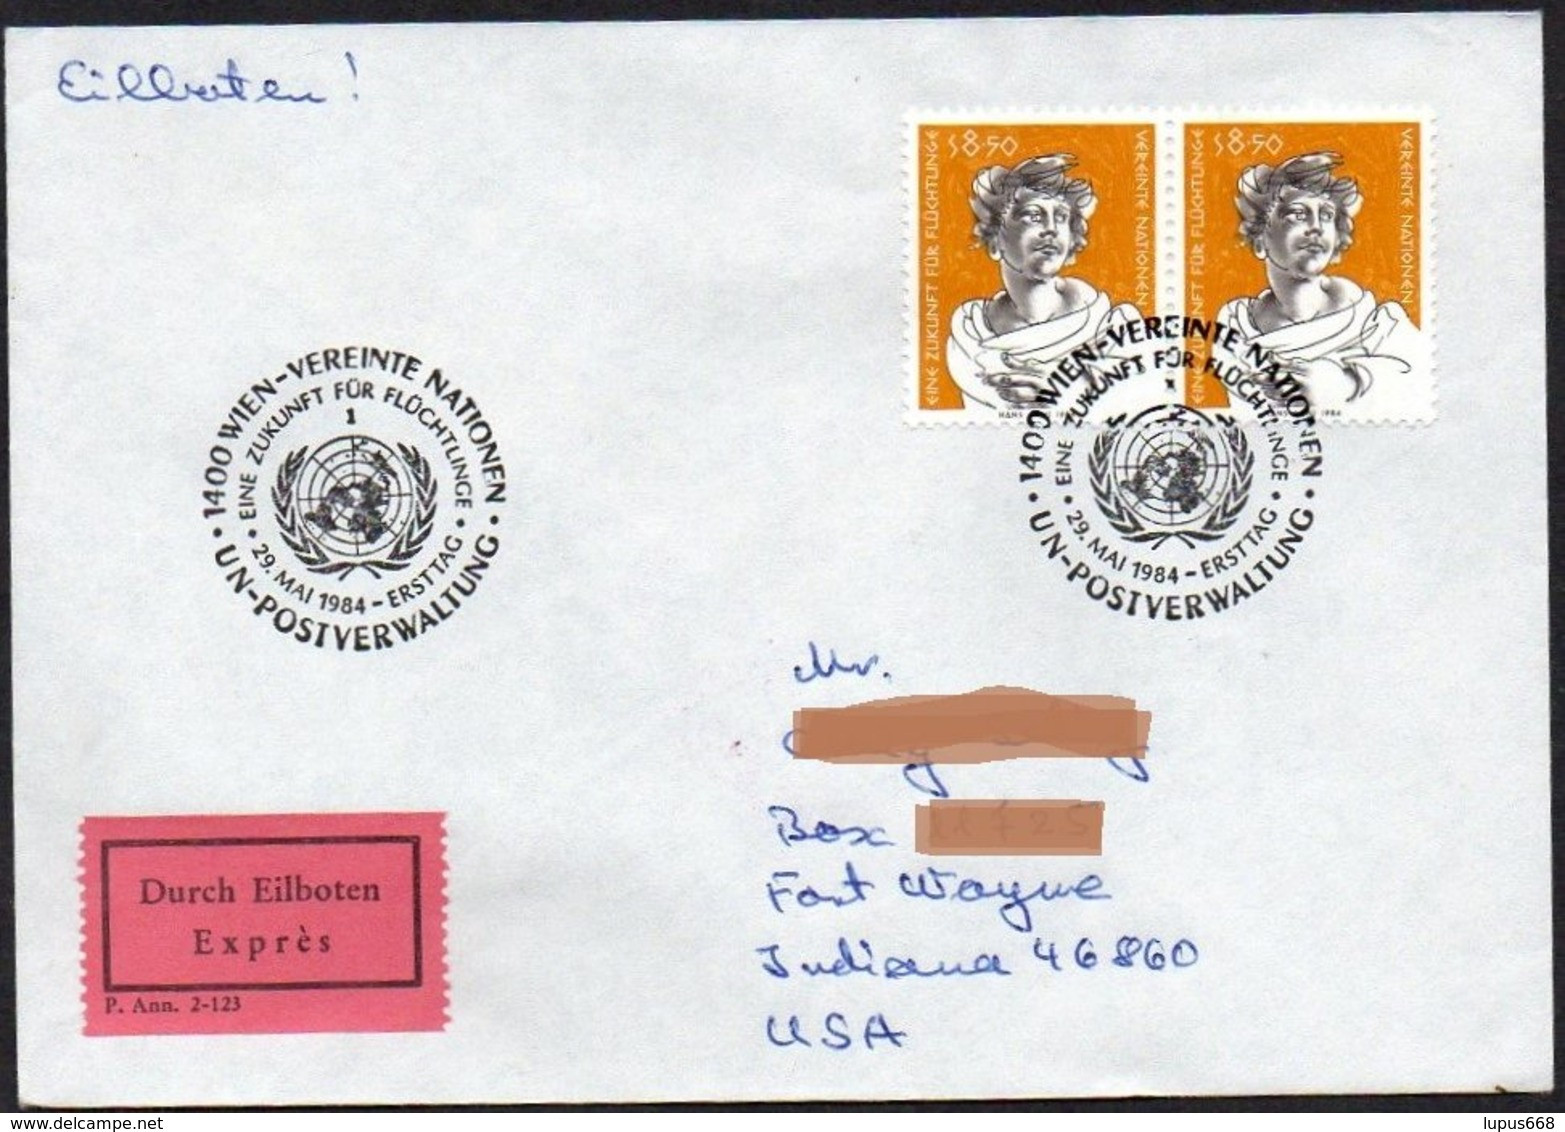 UNO - Wien  1984  MiNr. 44 (2)  Auf Express - Brief In Die U.S.A  ,  FDC; Eine Zukunft Für Flüchtlinge - Briefe U. Dokumente